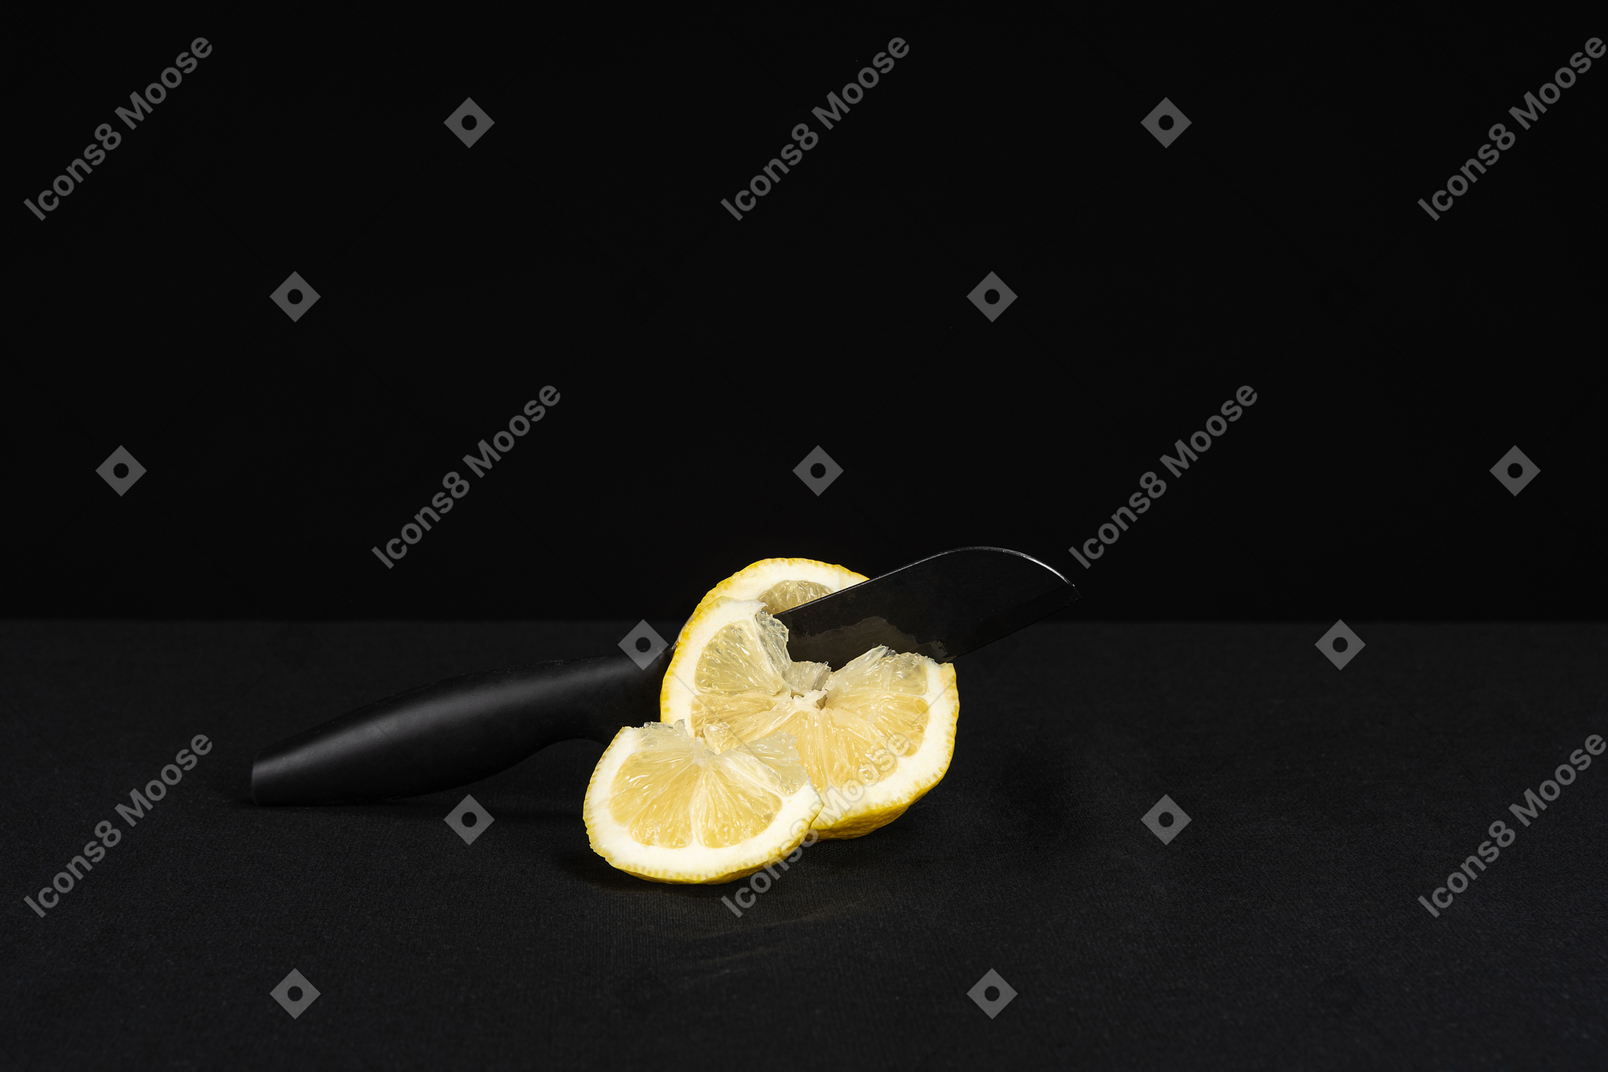 Нож для резки лимона на черном фоне